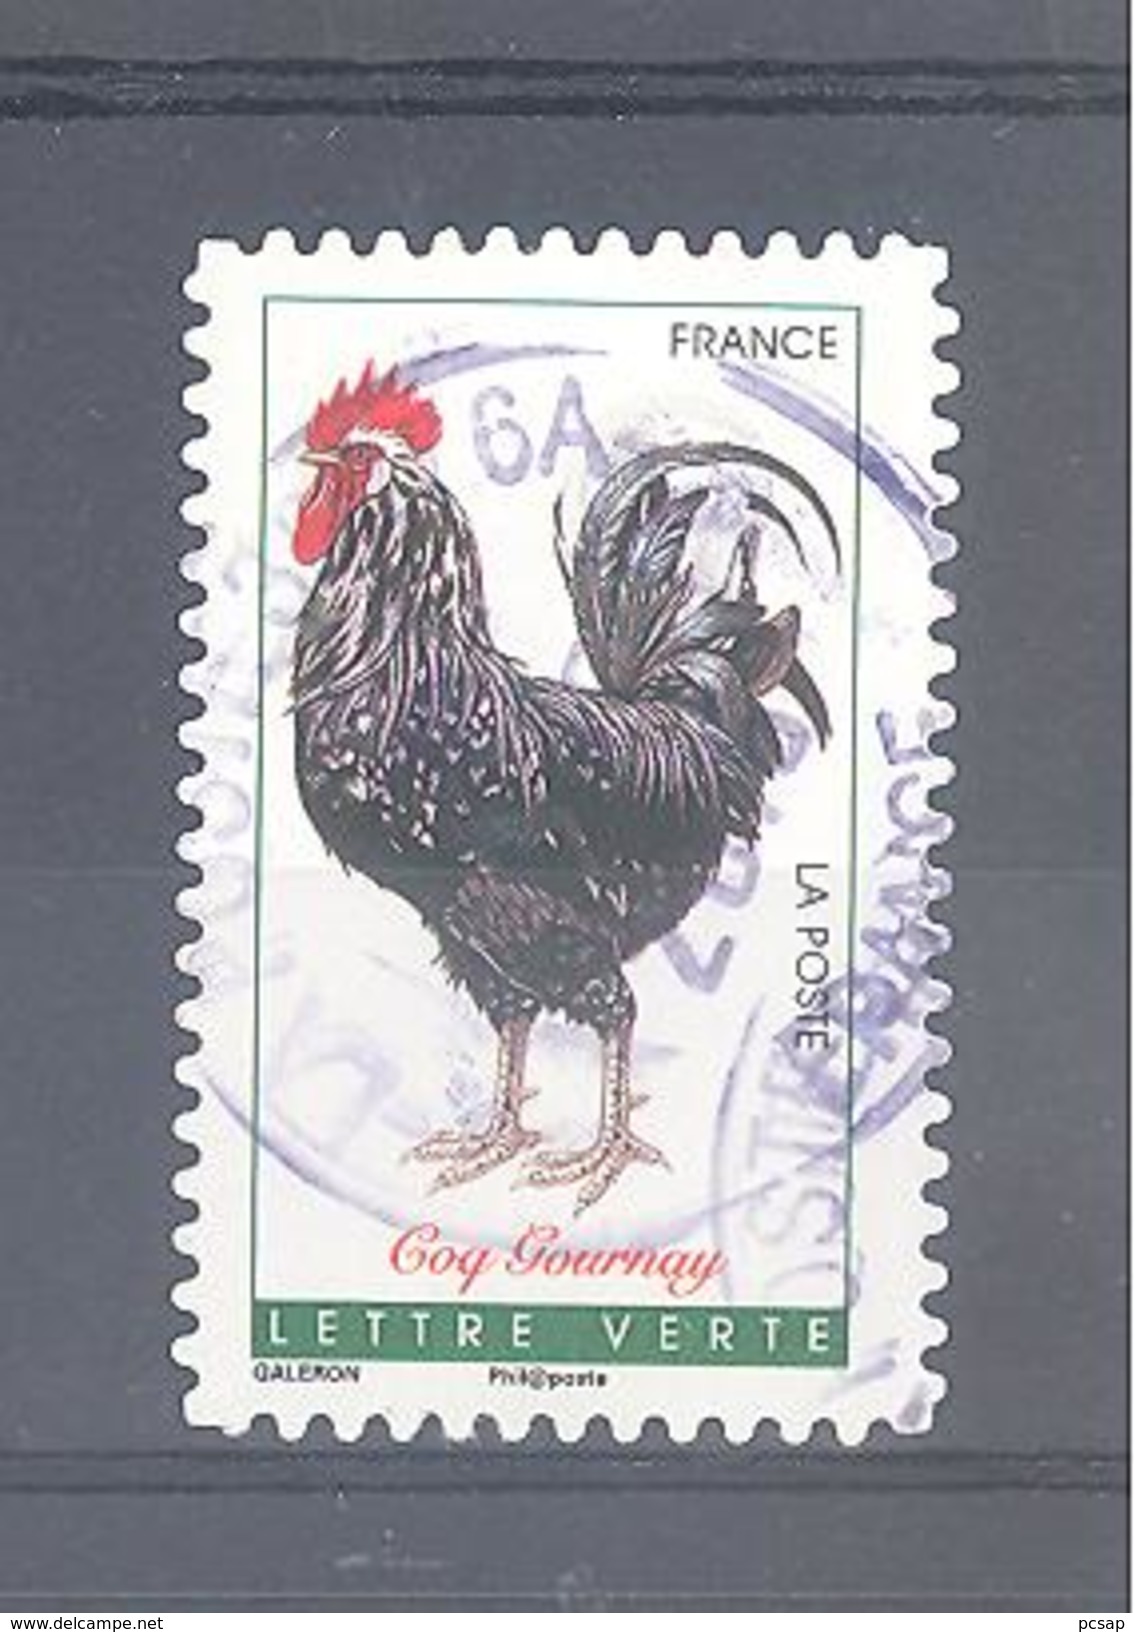 France Autoadhésif Oblitéré N°1247 (Coq Gournay) (cachet Rond) - Oblitérés